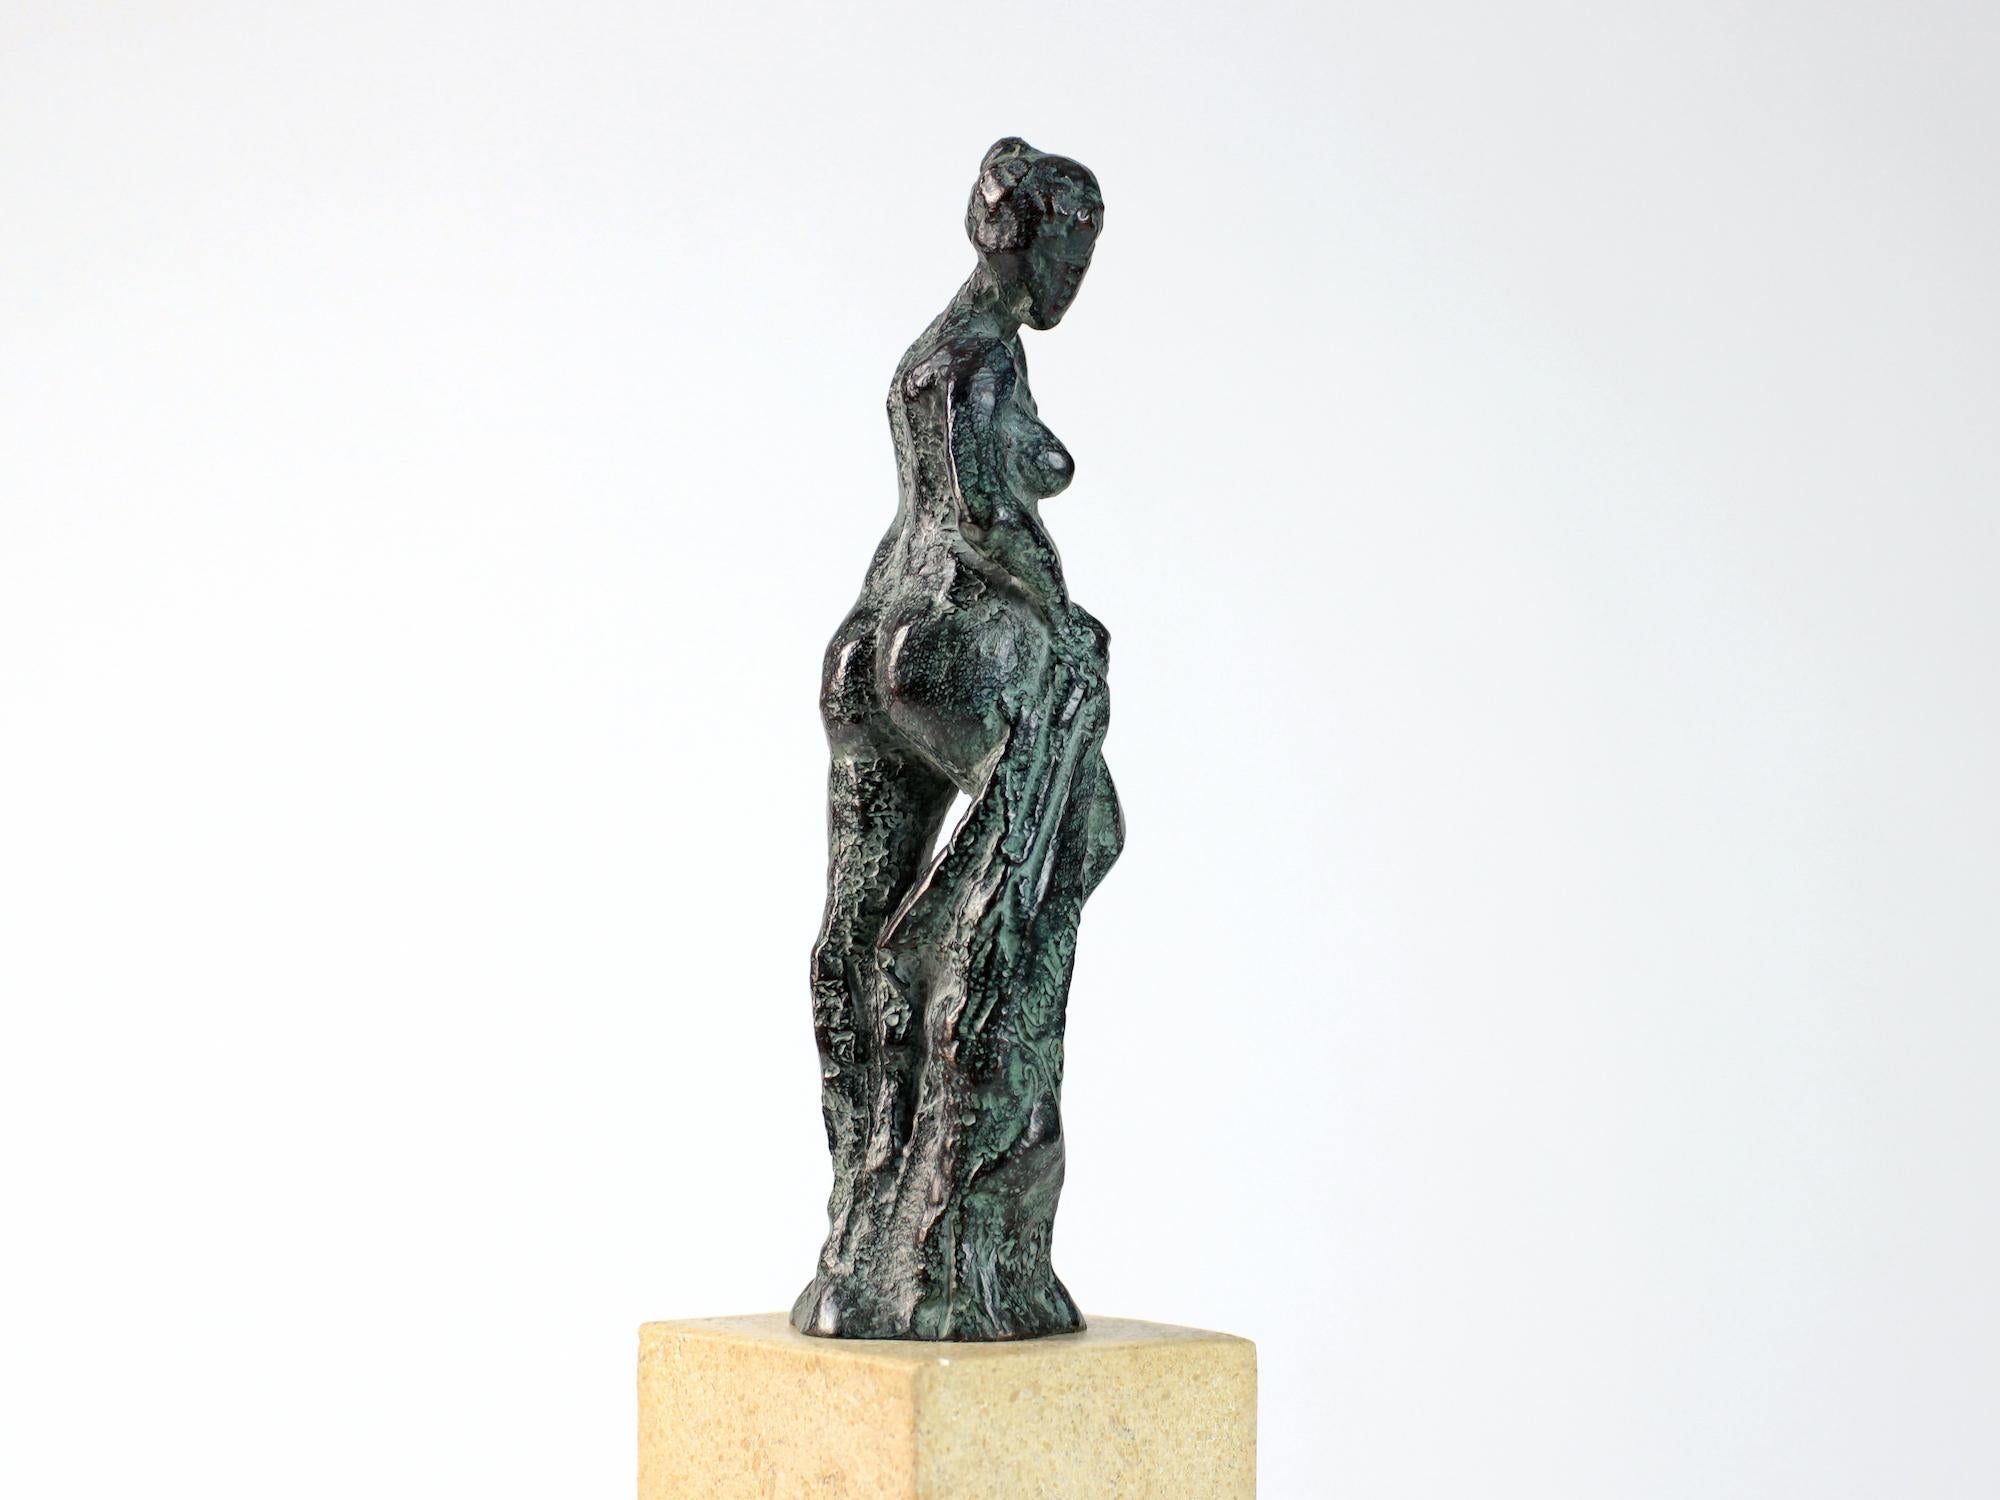 Bather II ist eine Bronzeskulptur des zeitgenössischen französischen Künstlers Yann Guillon. 14 cm × 8 cm × 5 cm.
Erhältlich in einer limitierten Auflage von 8 + 4 Probedrucken, jeweils signiert und nummeriert, und mit einem Metallsockel verkauft.